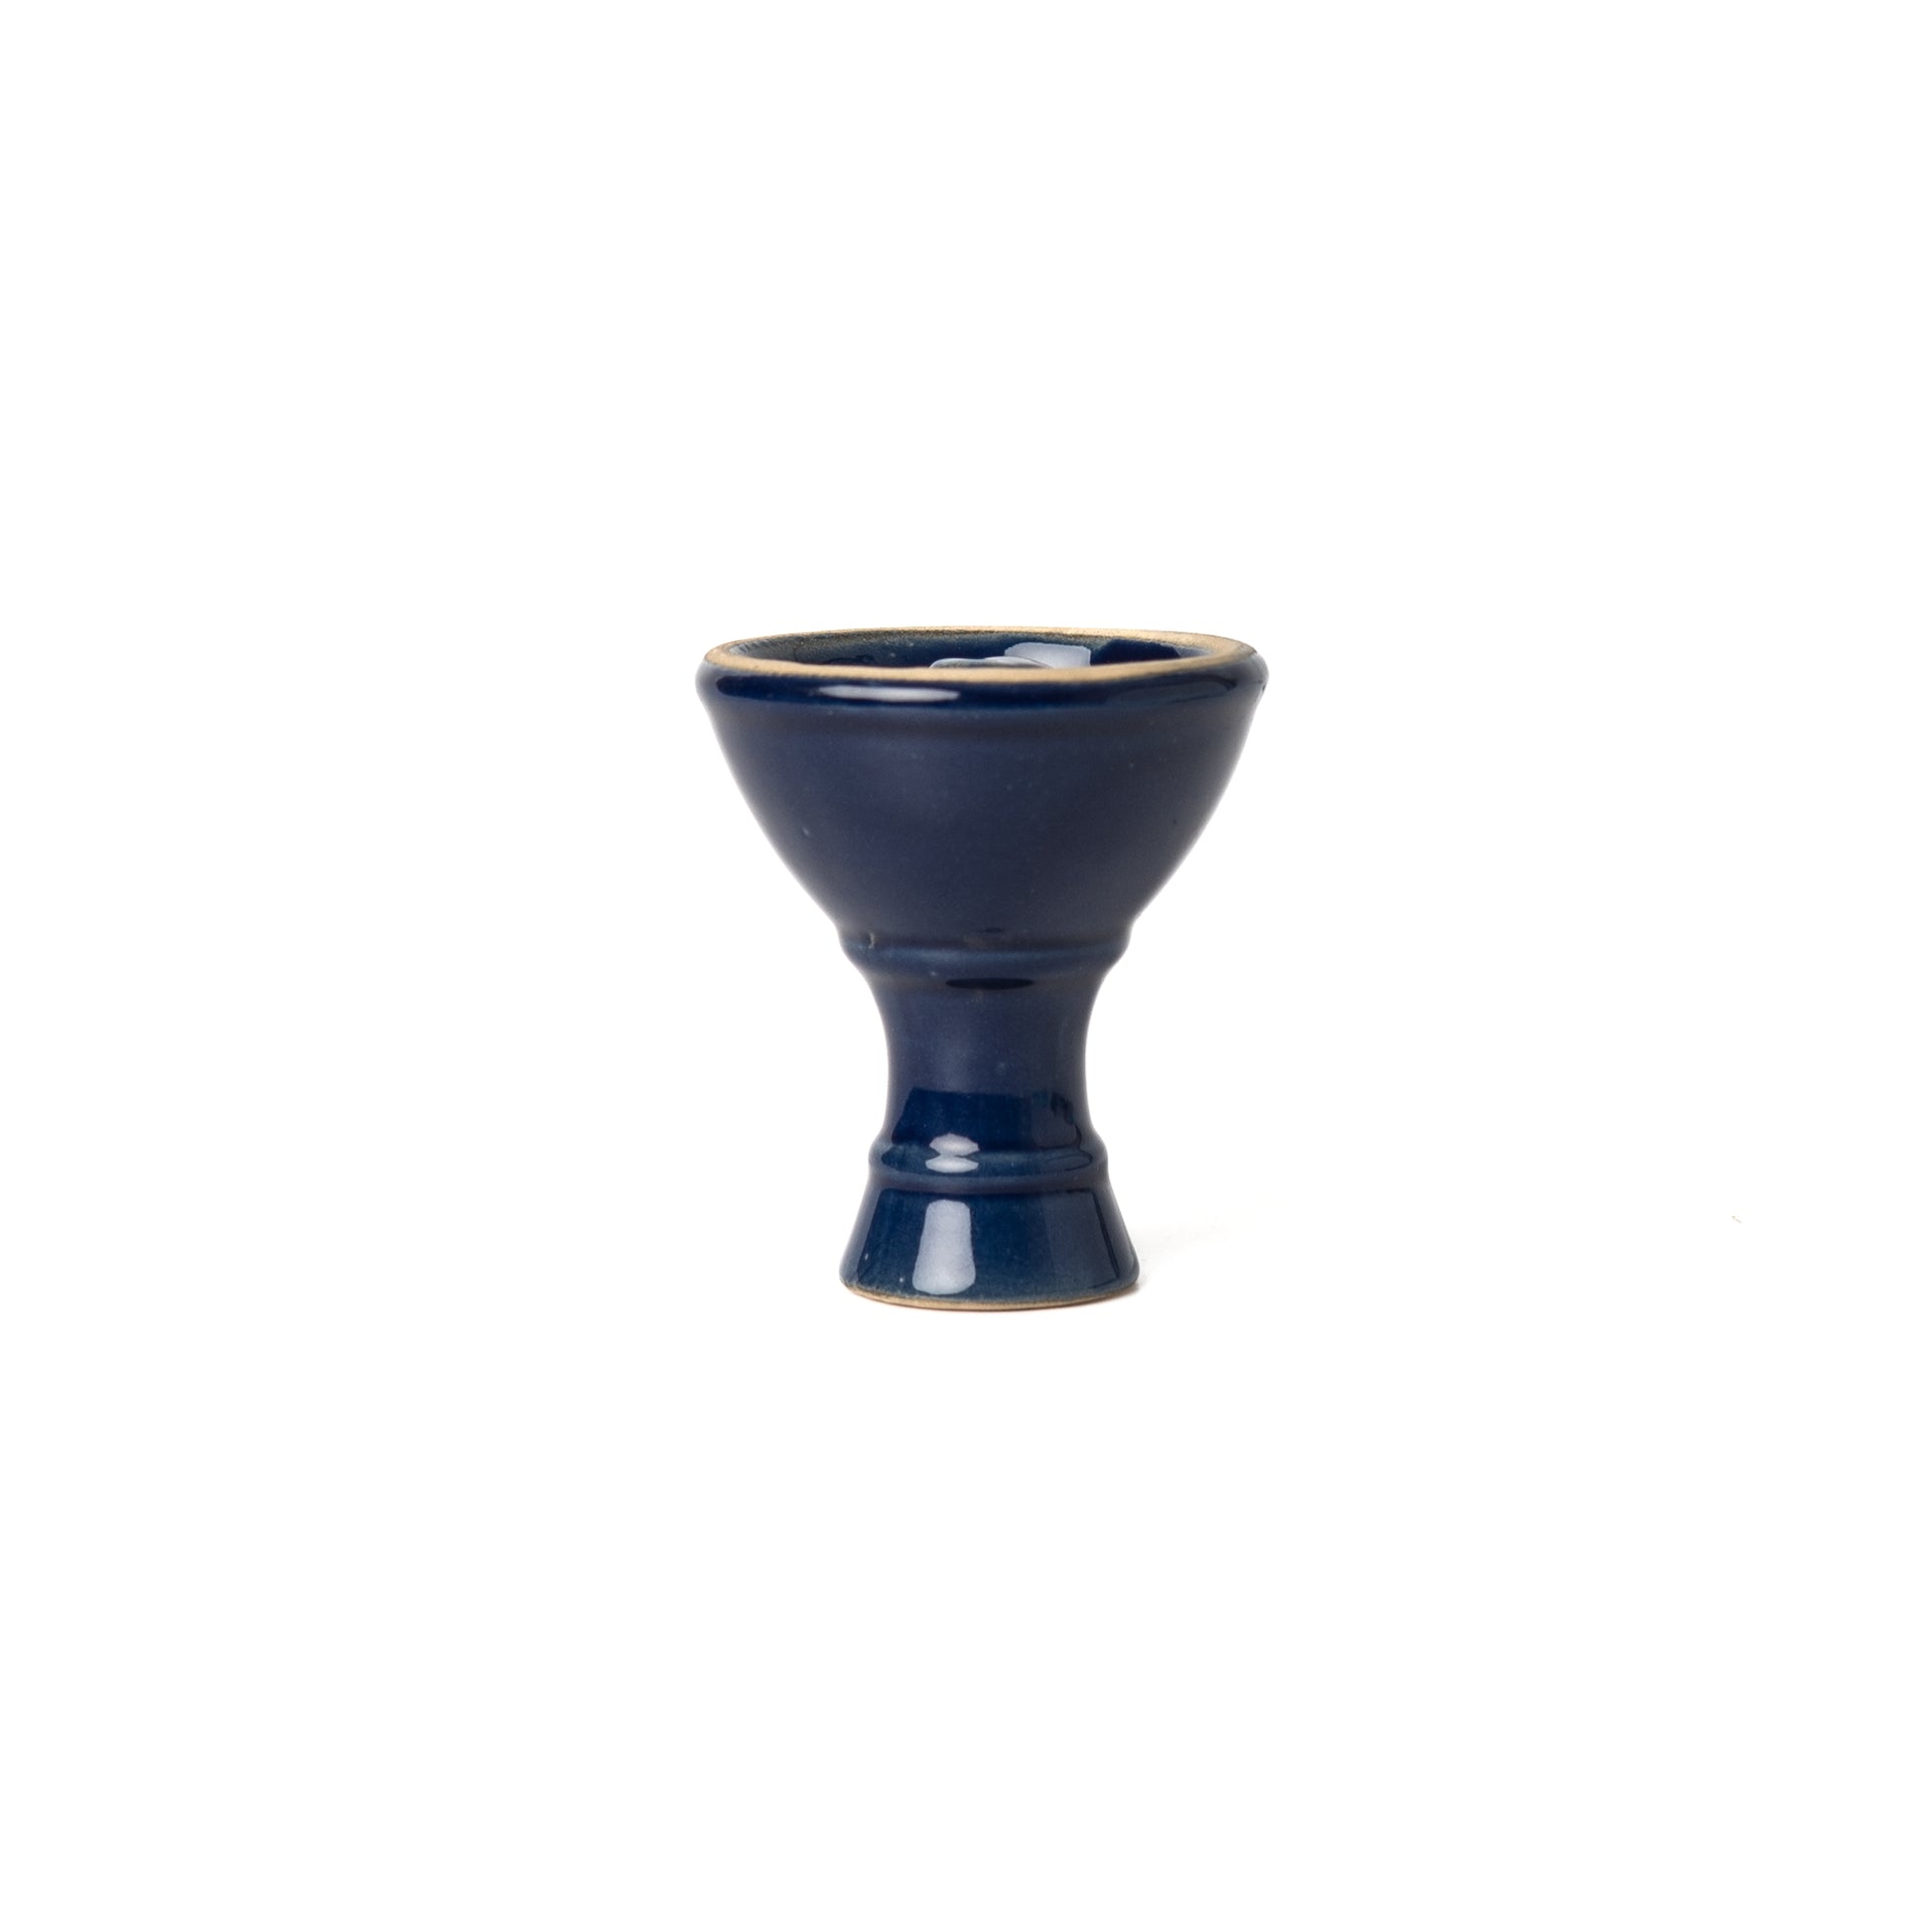 Ceramic Vortex Hookah Chillum / Bowl